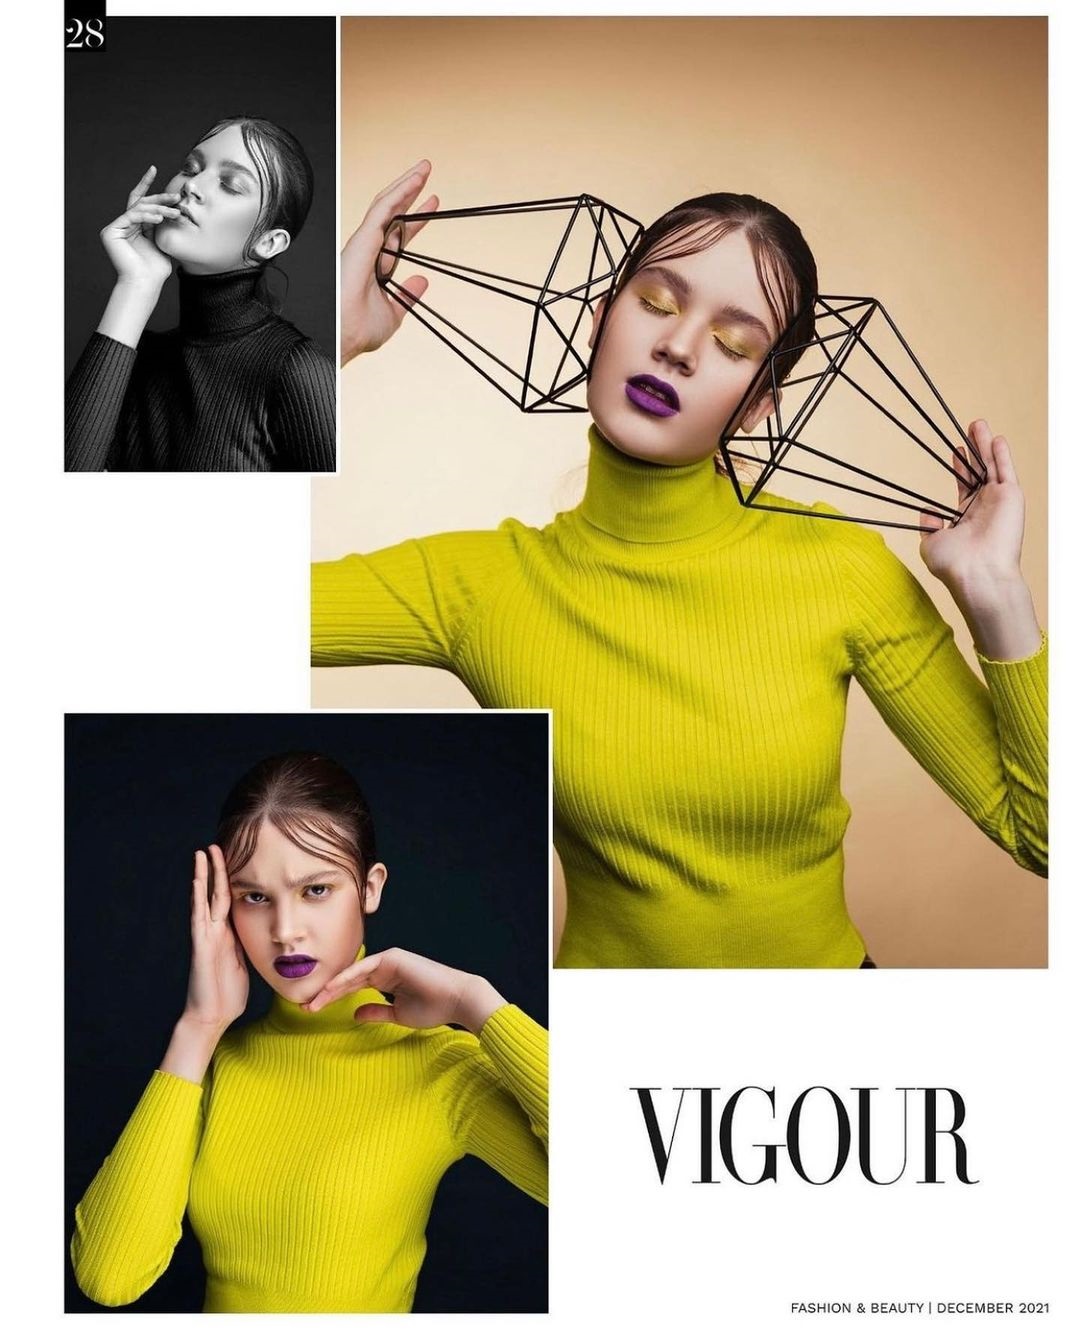 Фотограф Дарья Липатова и модель Мария Леонова поделились позитивной новостью: их творческий проект опубликовал канадский глянцевый журнал VIGOUR Magazine.